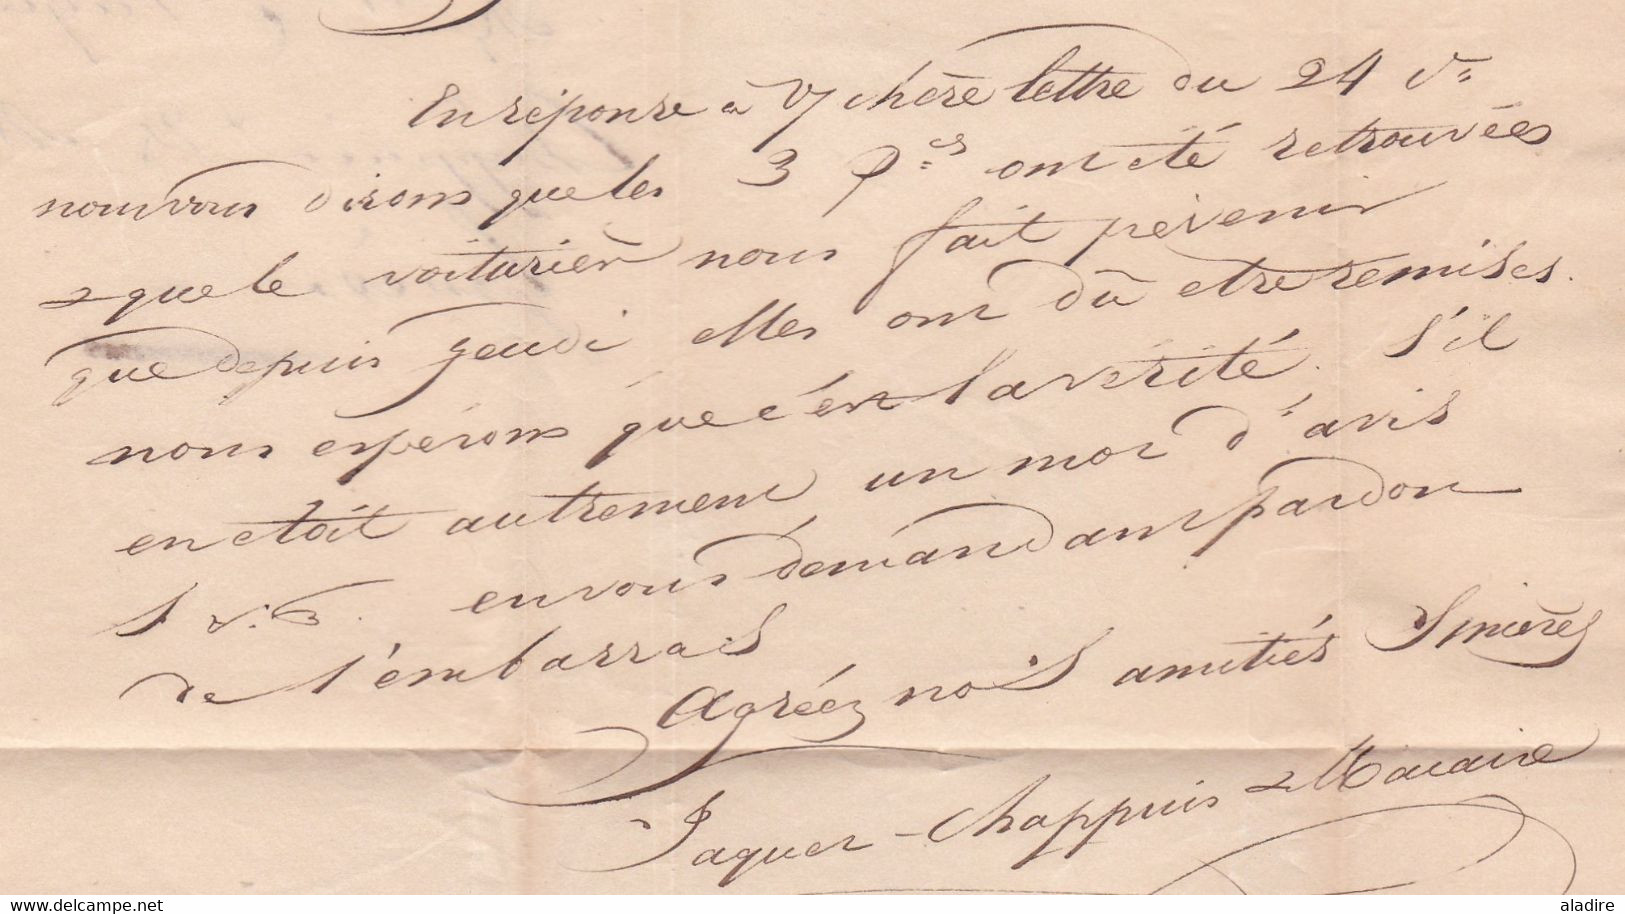 1835 - Marque postale GENEVE sur lettre pliée avec correspondance en français vers Chambery, royaume de Savoie